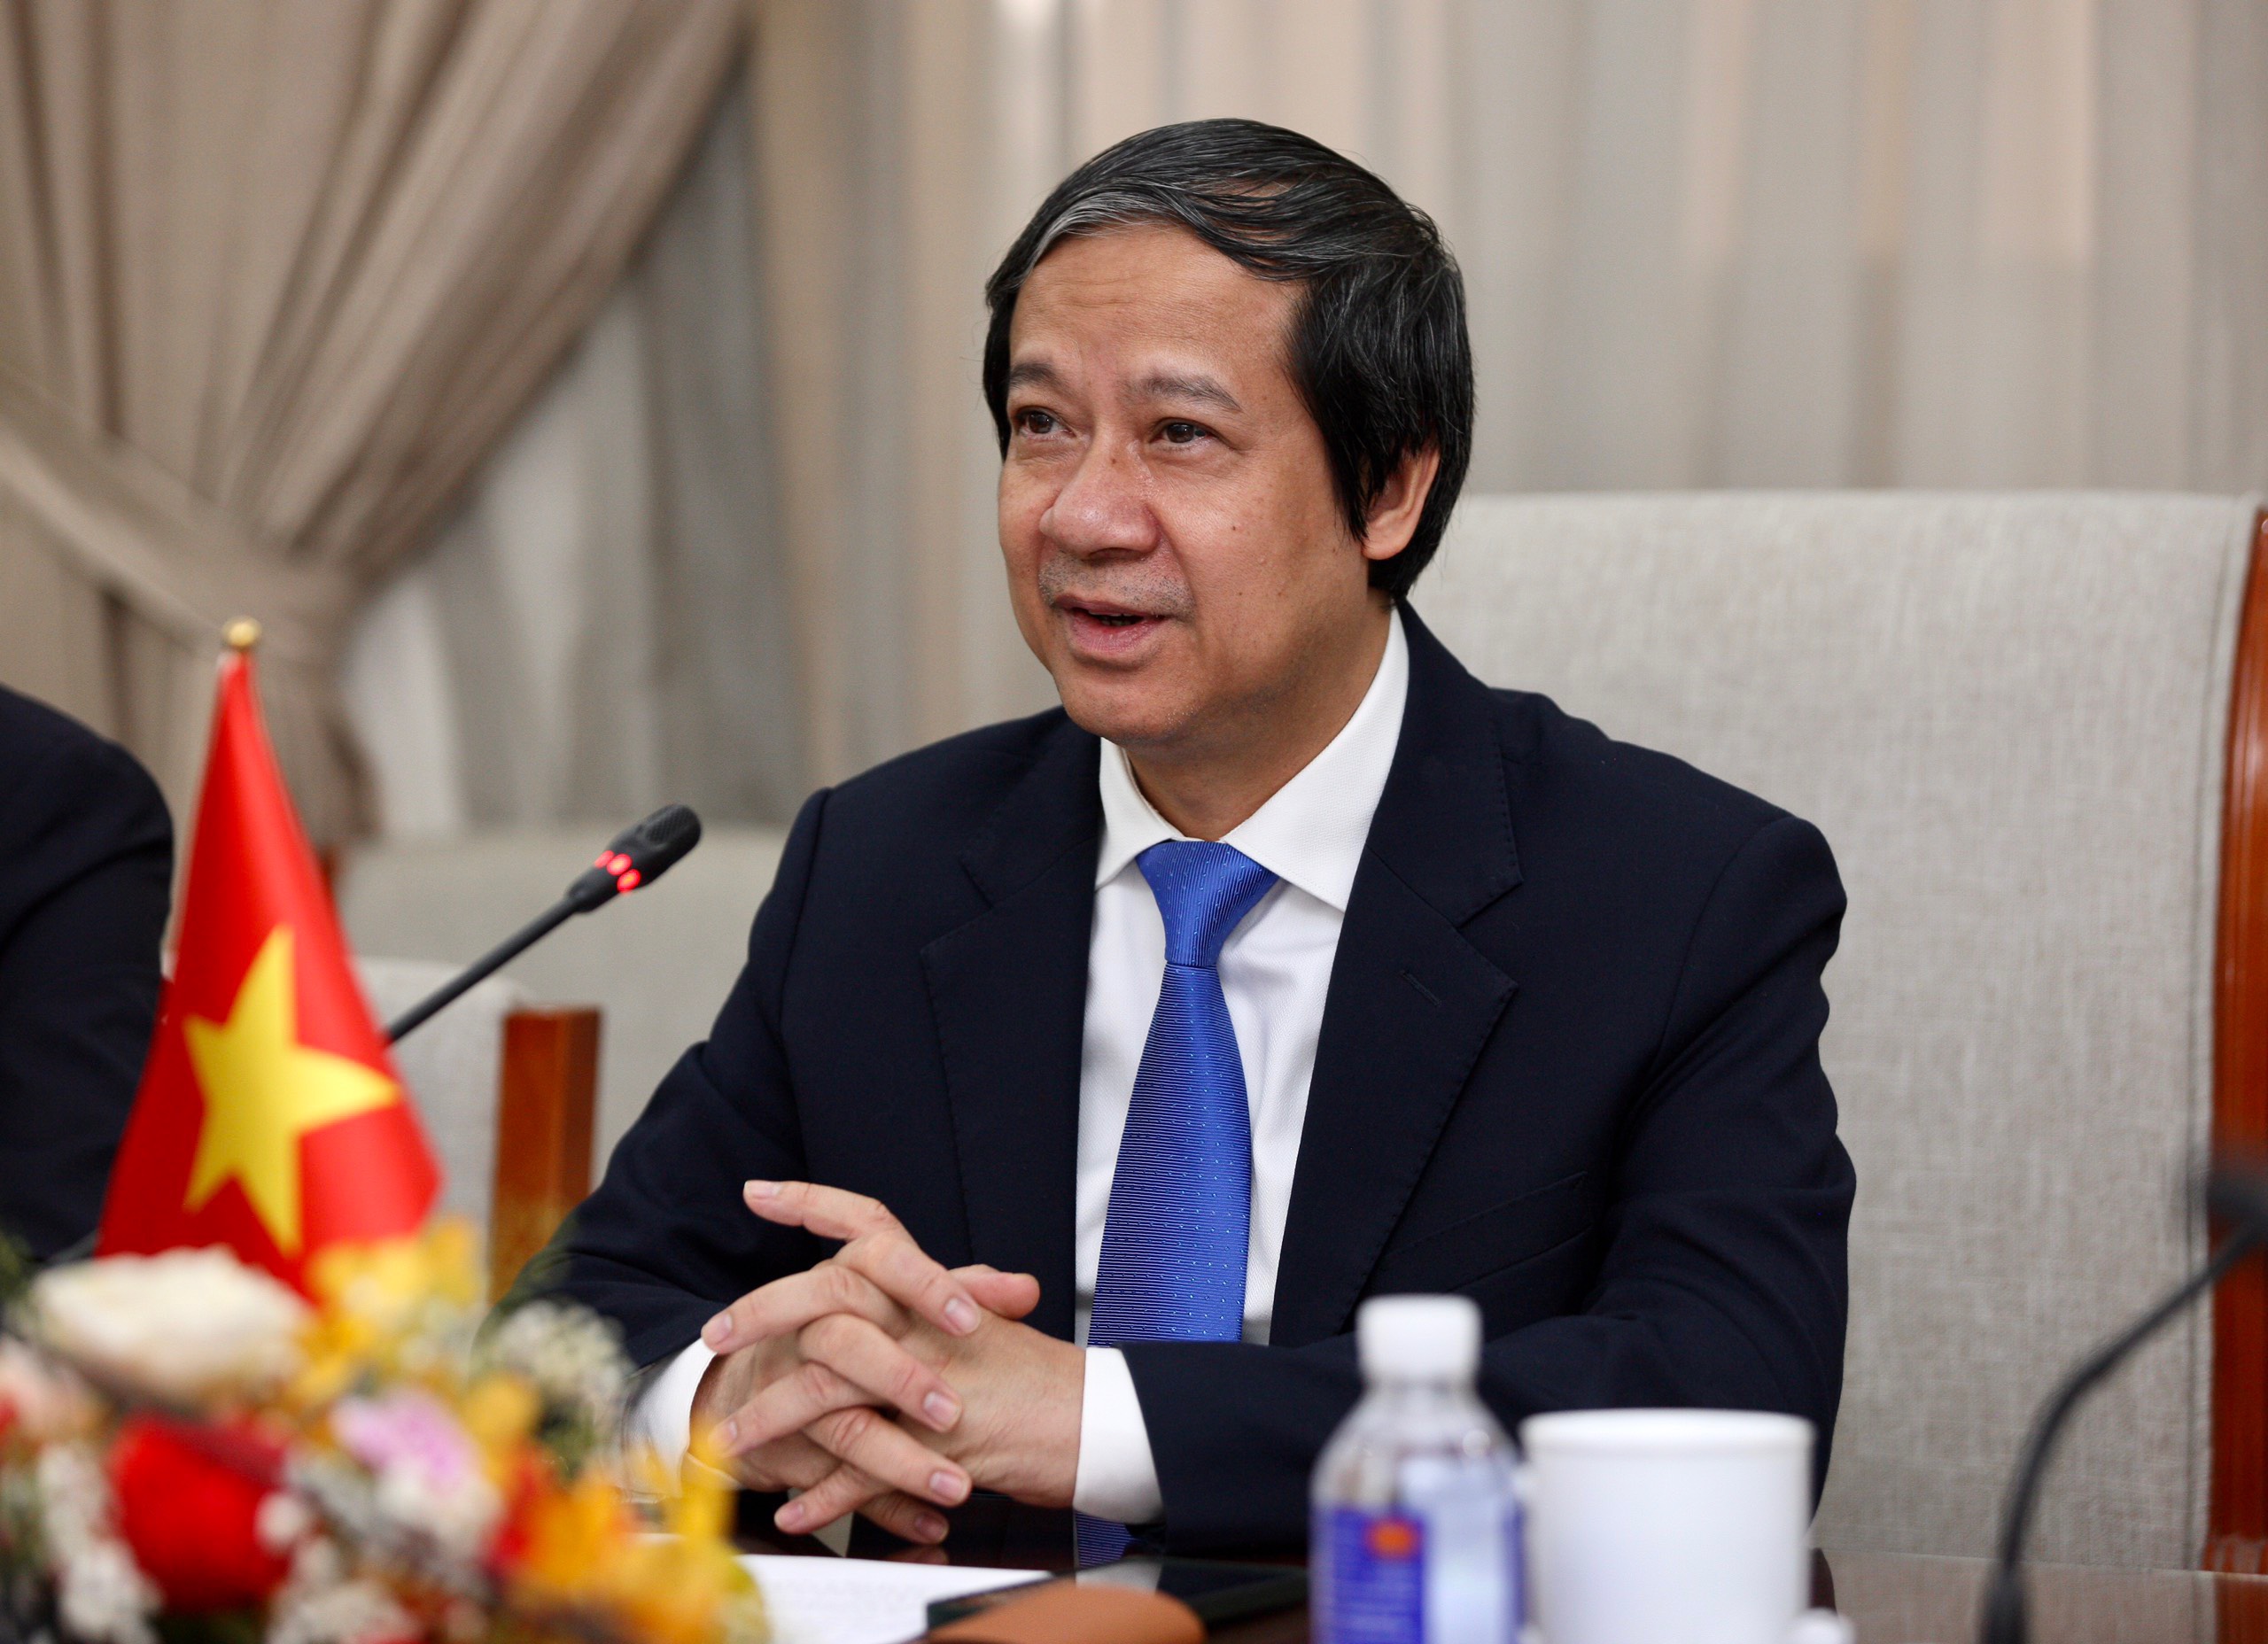 Bộ trưởng Bộ GD&ĐT Nguyễn Kim Sơn phát biểu tại buổi tiếp.